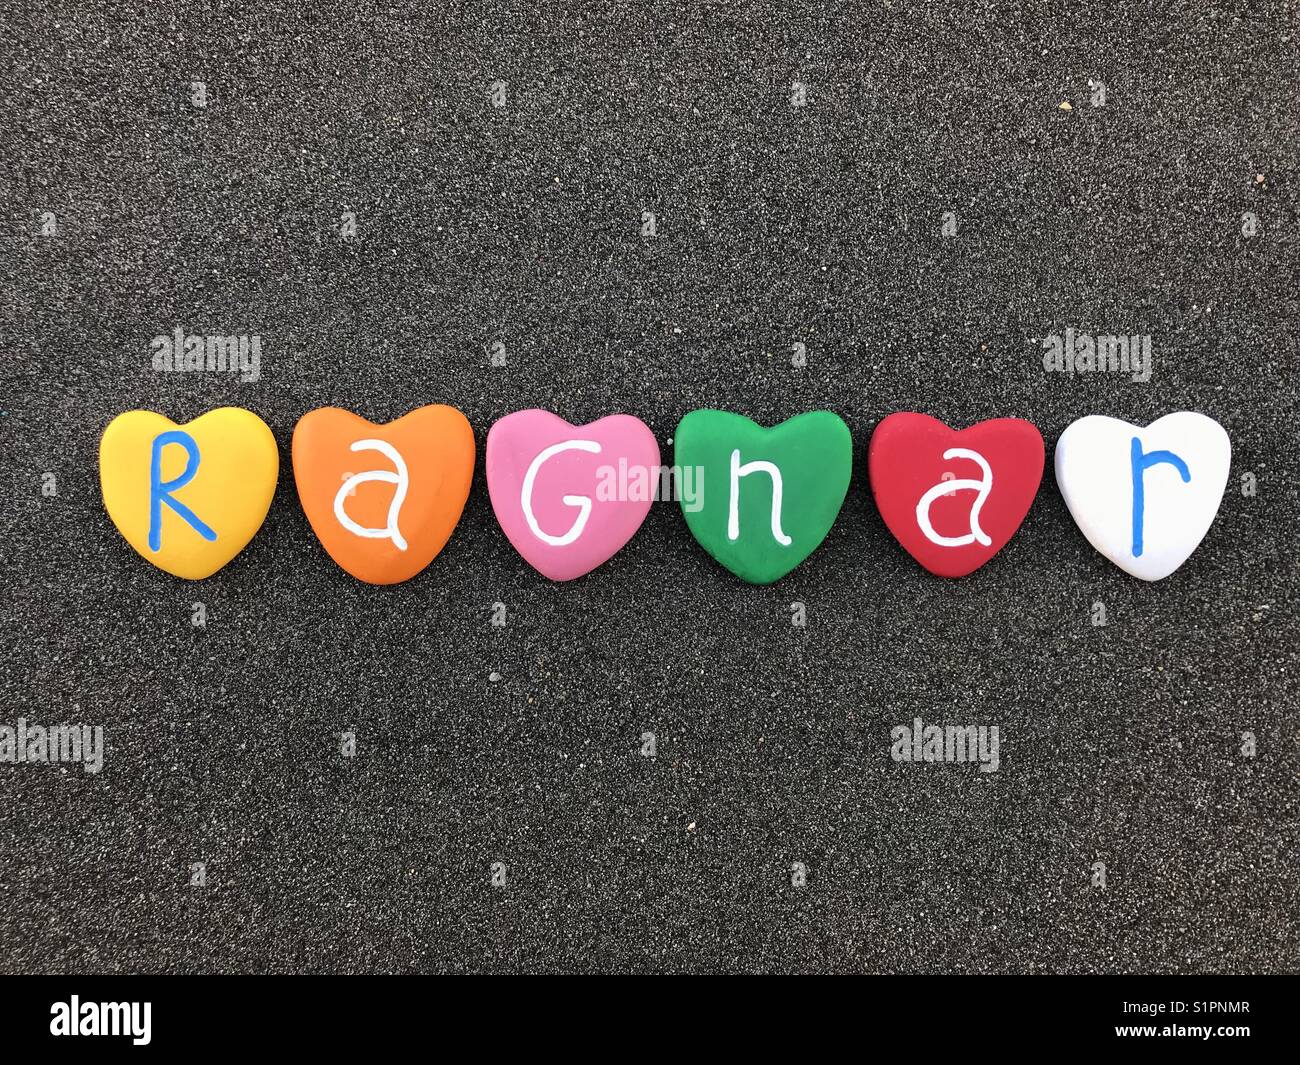 Ragnar, skandinavischen männliche Name und Altnordischen Ursprung zusammen mit bunten Herzen Steine über schwarzen vulkanischen Sand Stockfoto